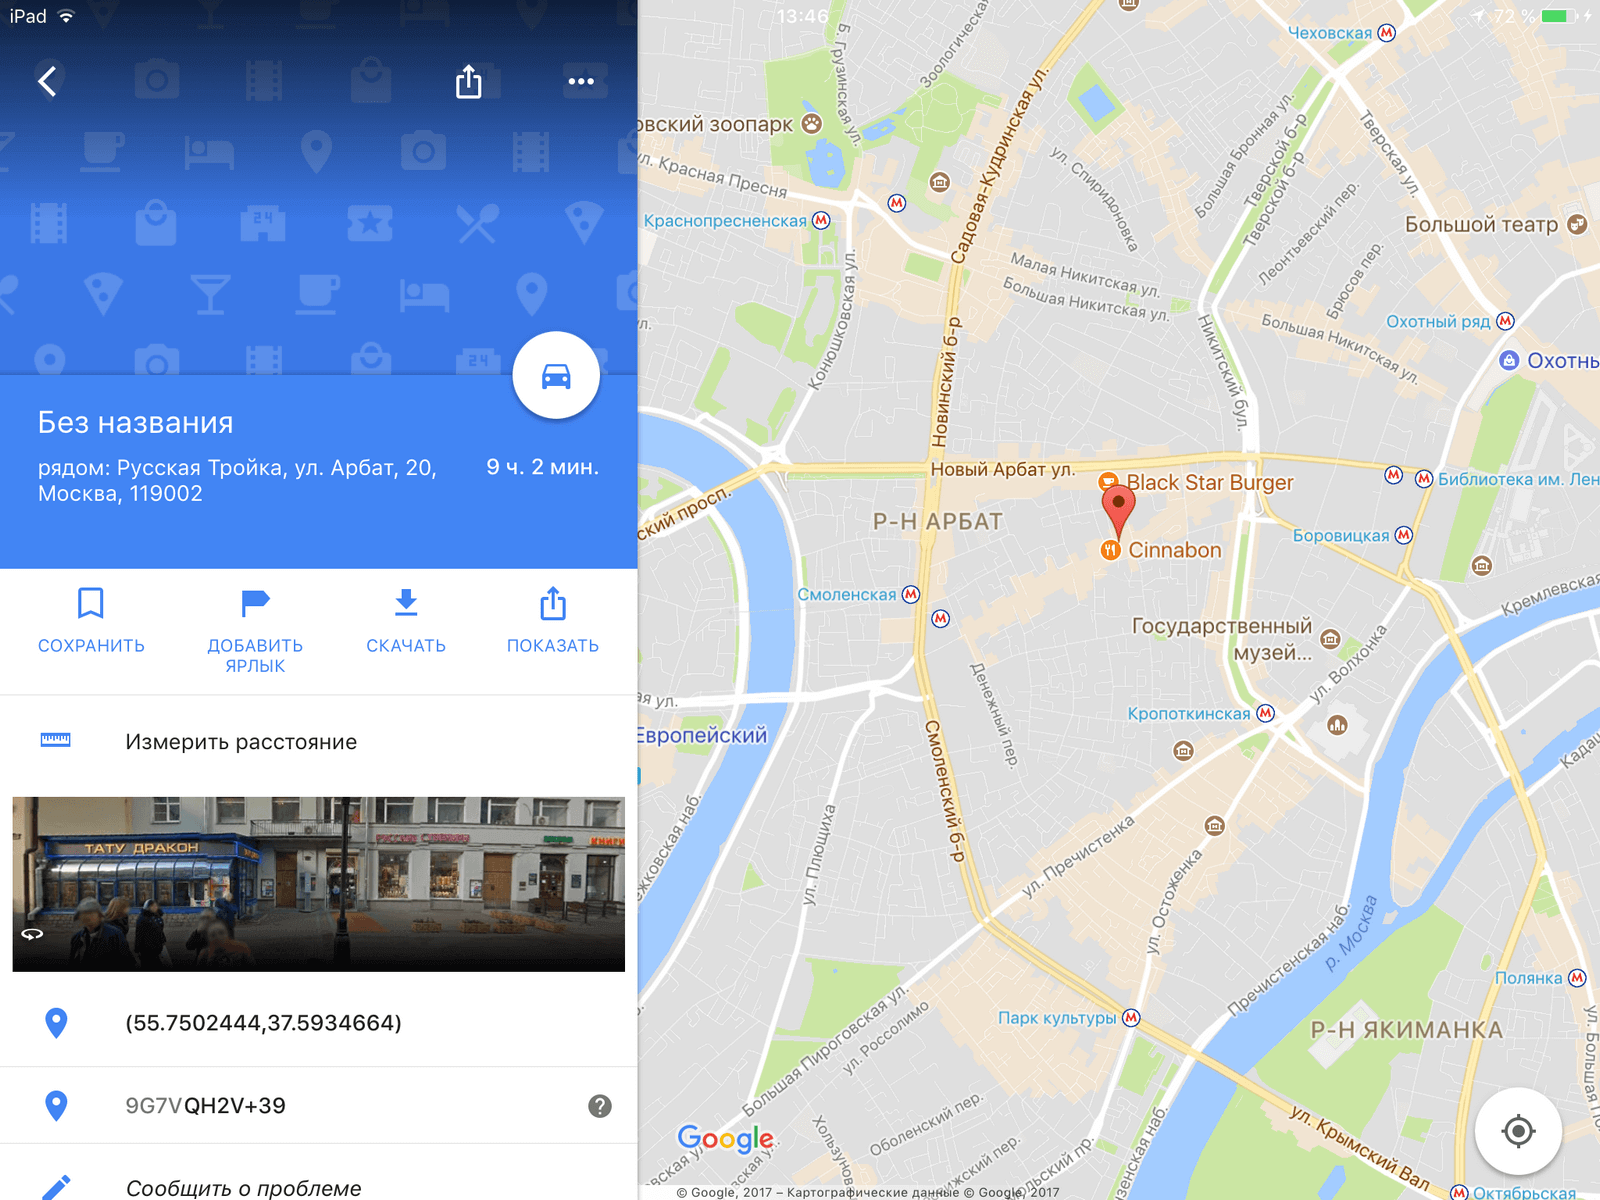 Гугл карты